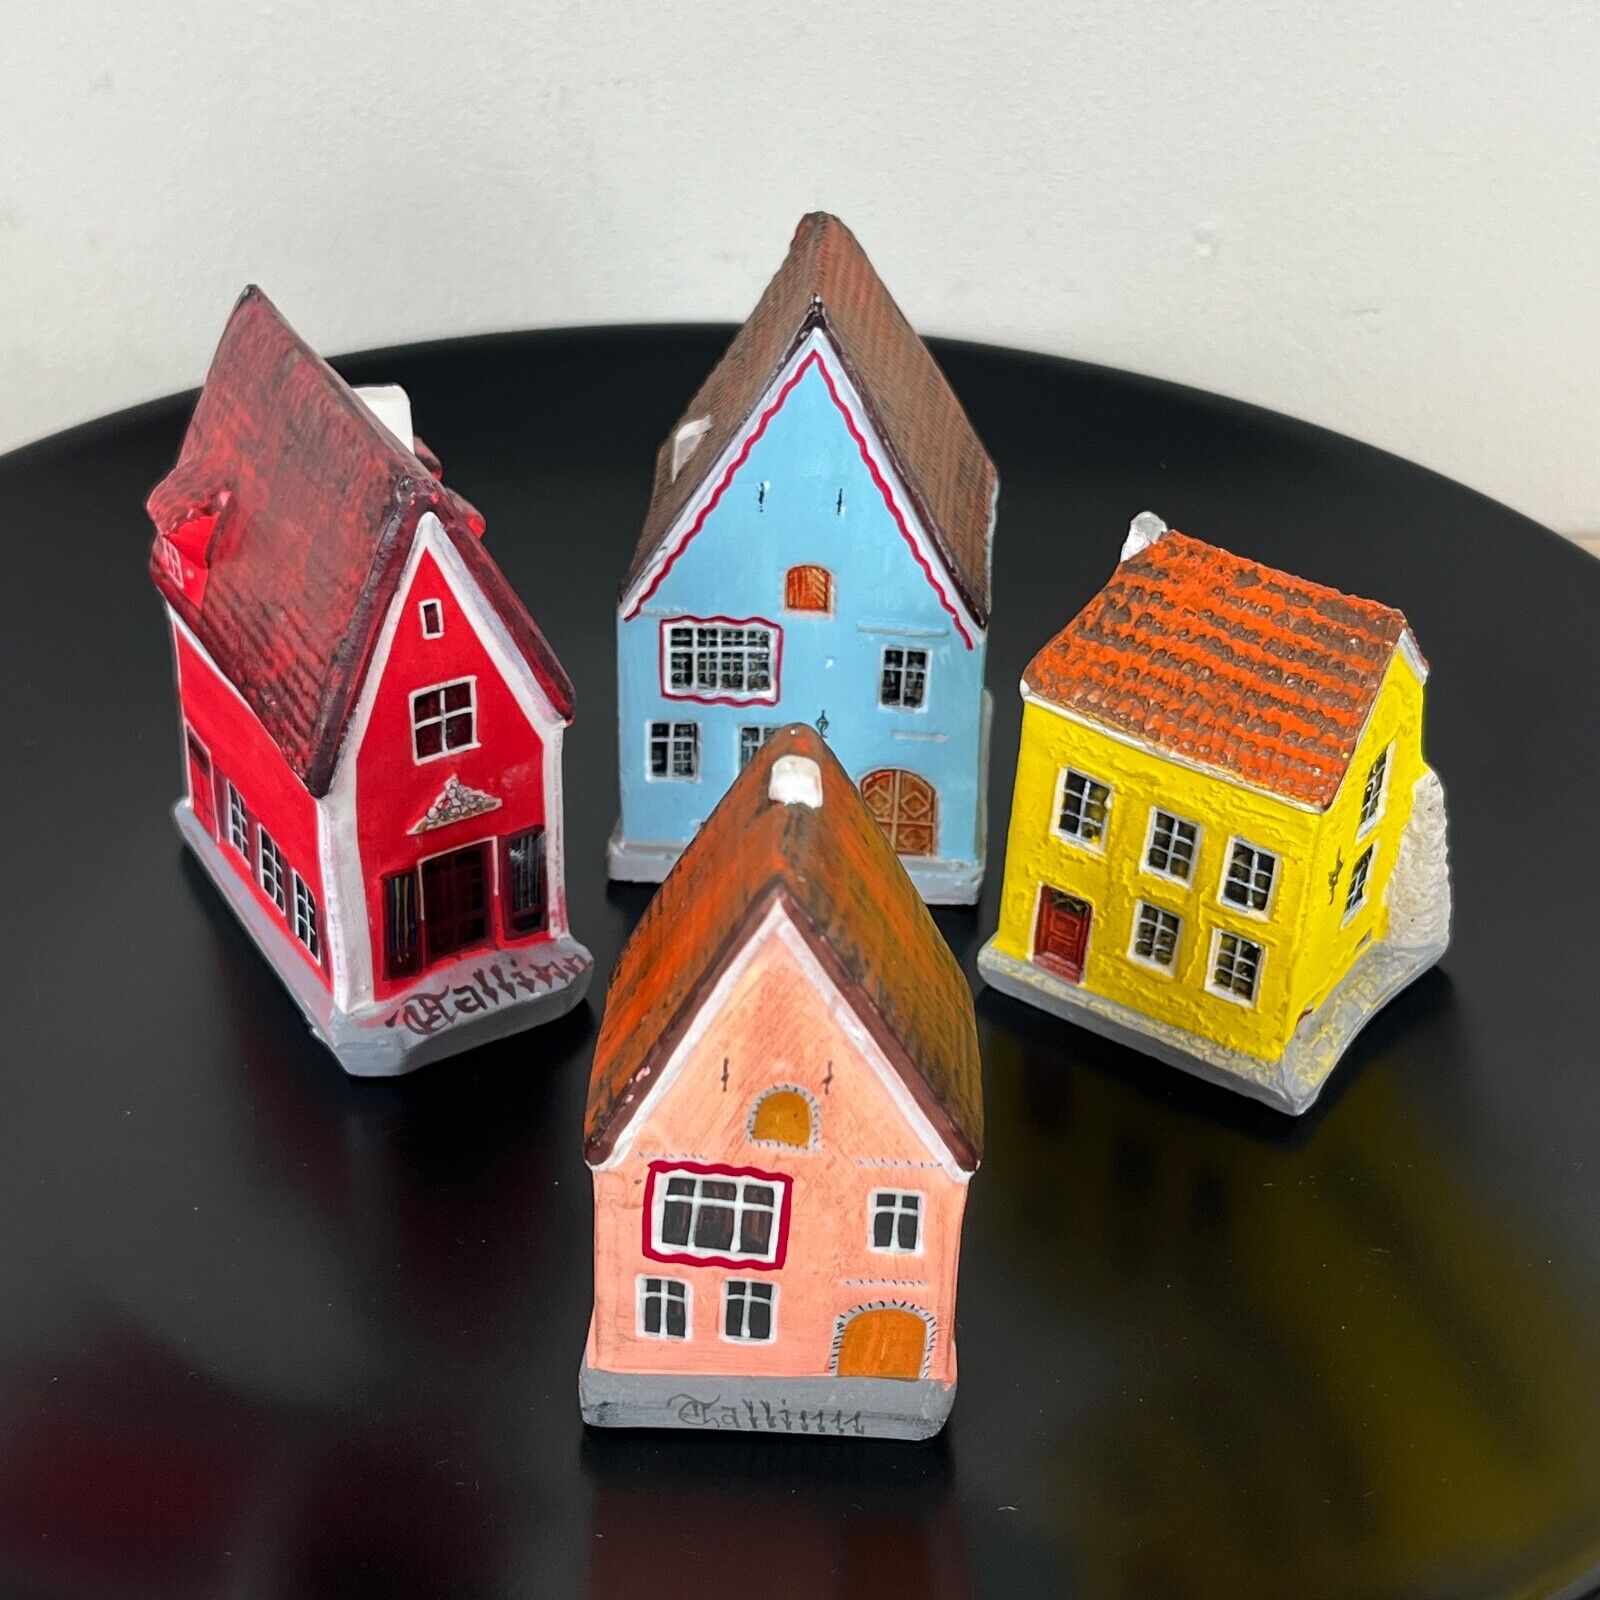 Old Tallinn Estonia Handmade Ceramic Miniature Village Houses Buildings Set of 4